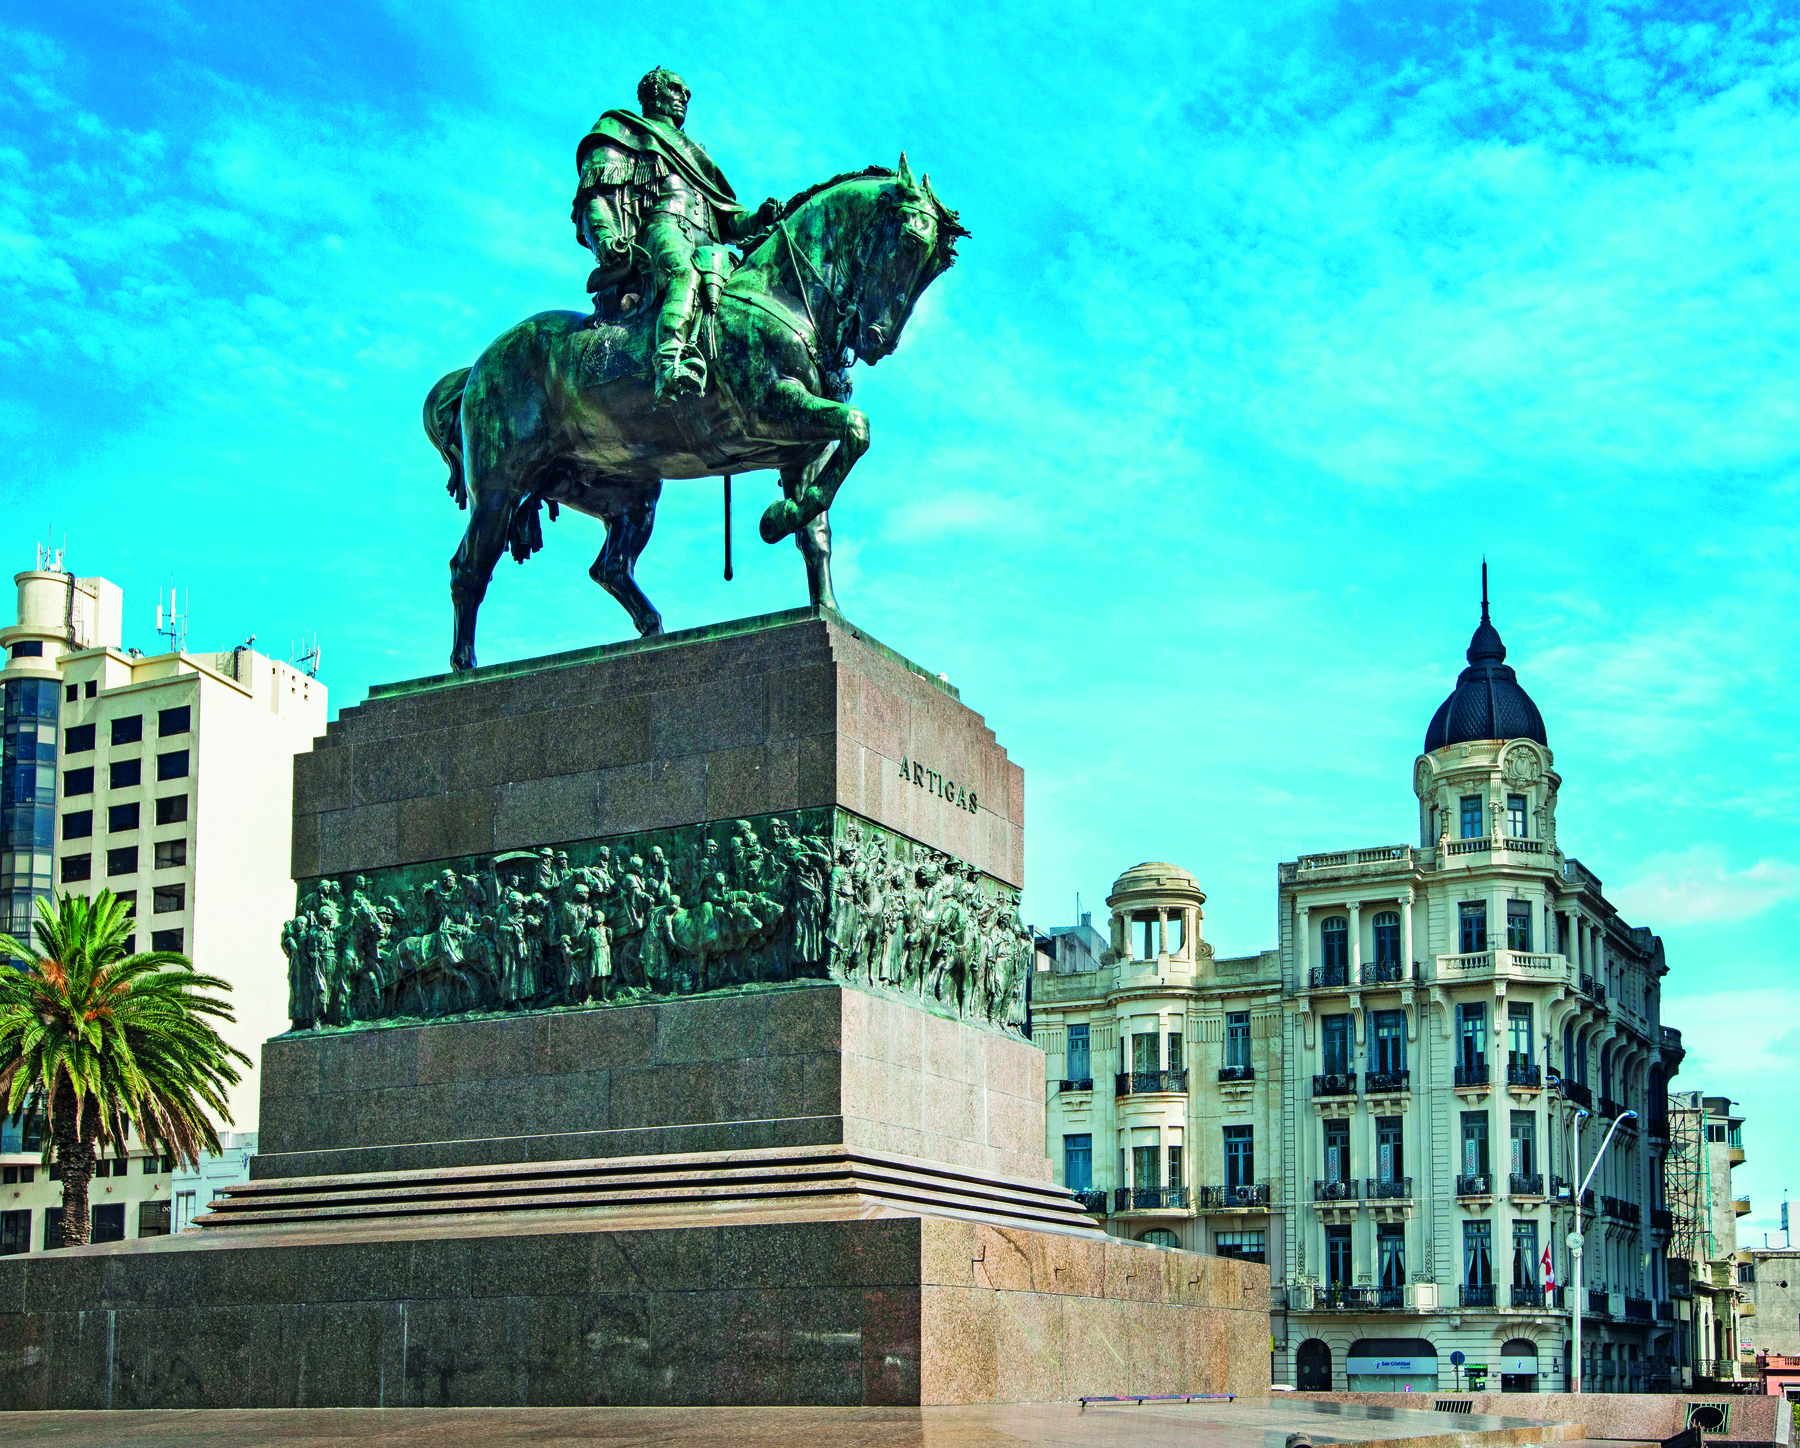 Fotografia. Sobre um pedestal de pedra, a estátua de um homem vestindo uma armadura, montado em um cavalo. Em segundo plano, edifícios, um deles com uma cúpula azul. No pedestal está gravado o nome: Artigas.